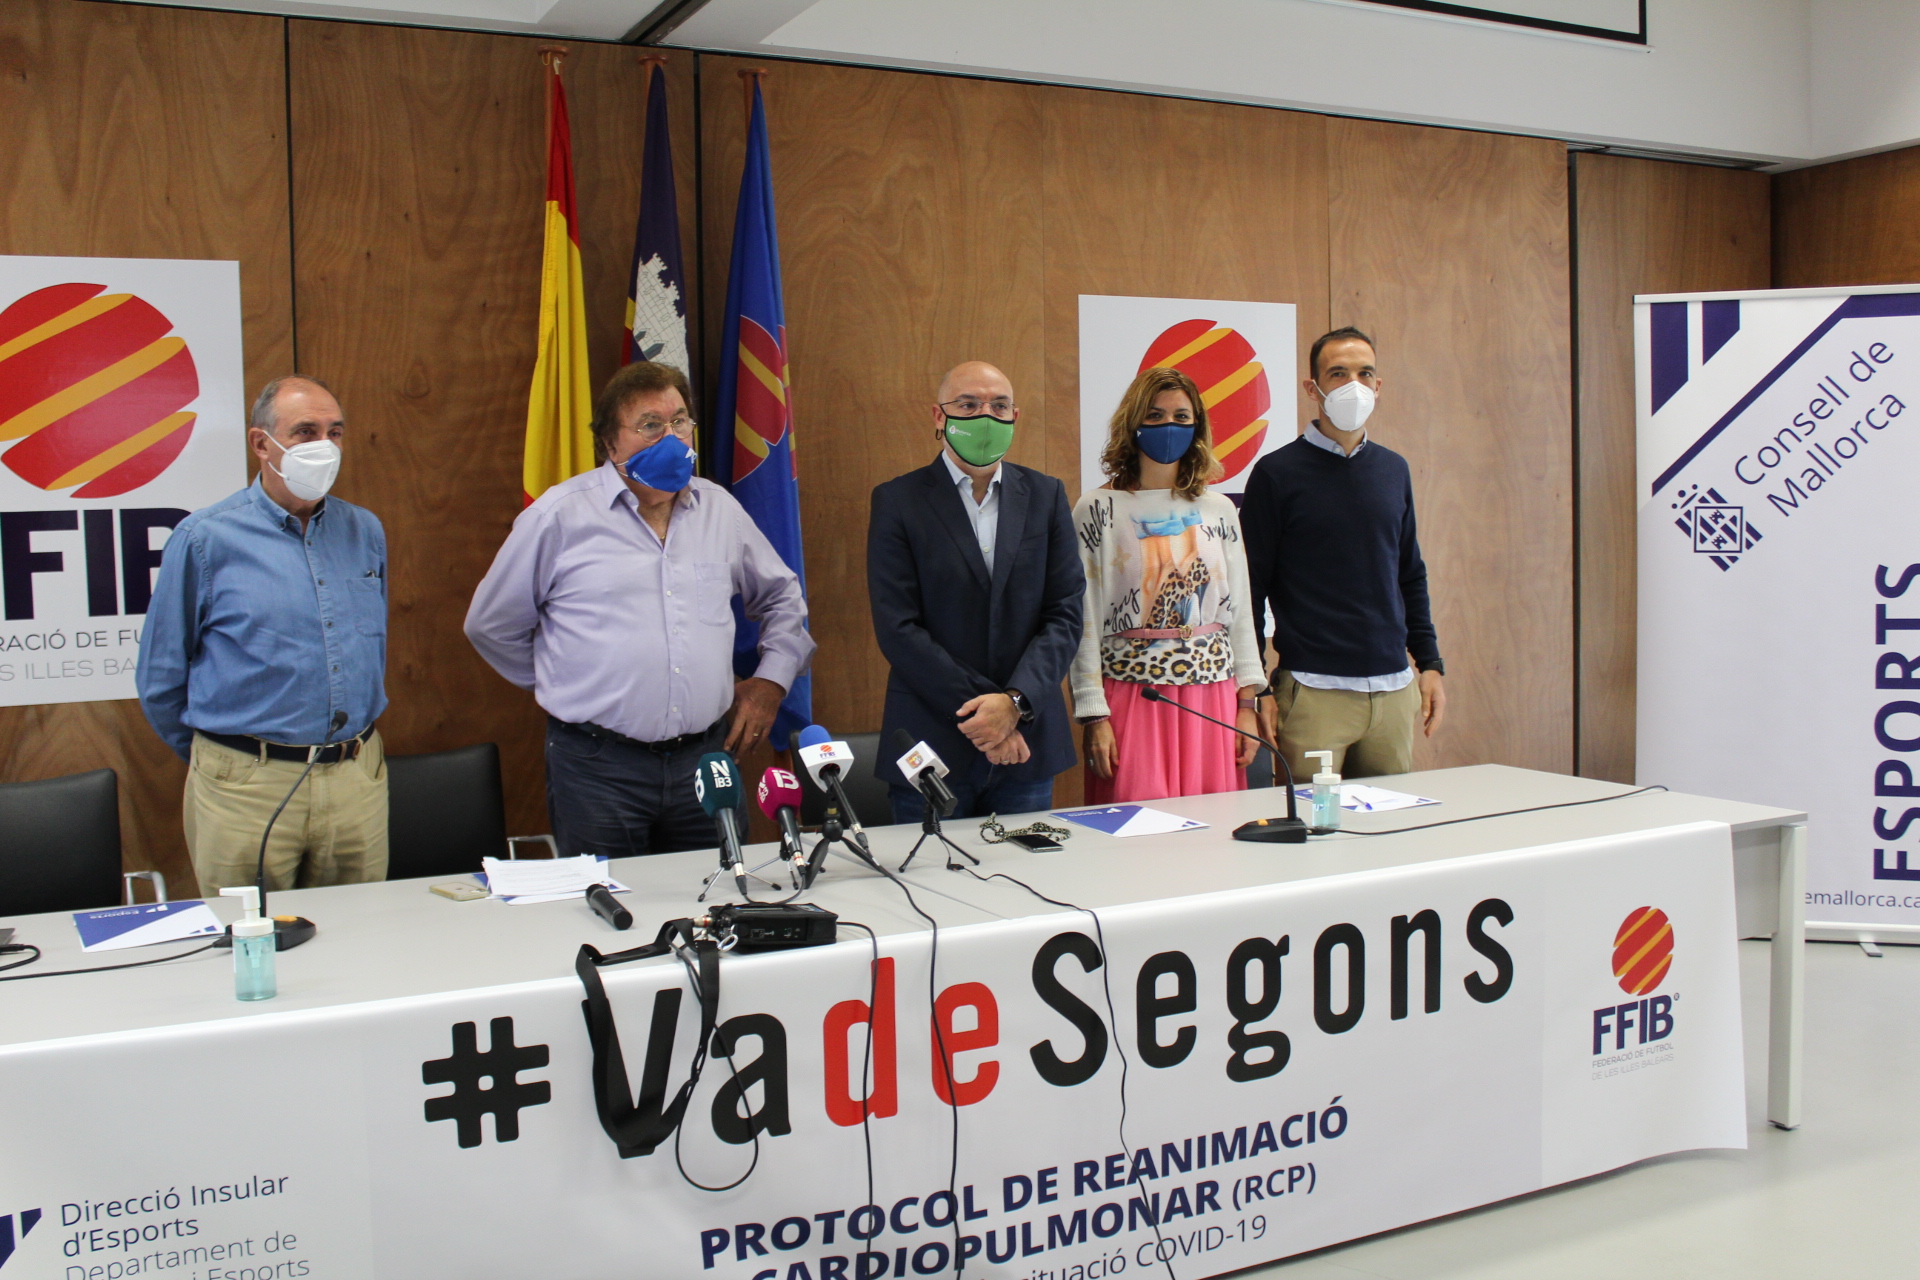 Presentación de la campaña #VadeSegons.